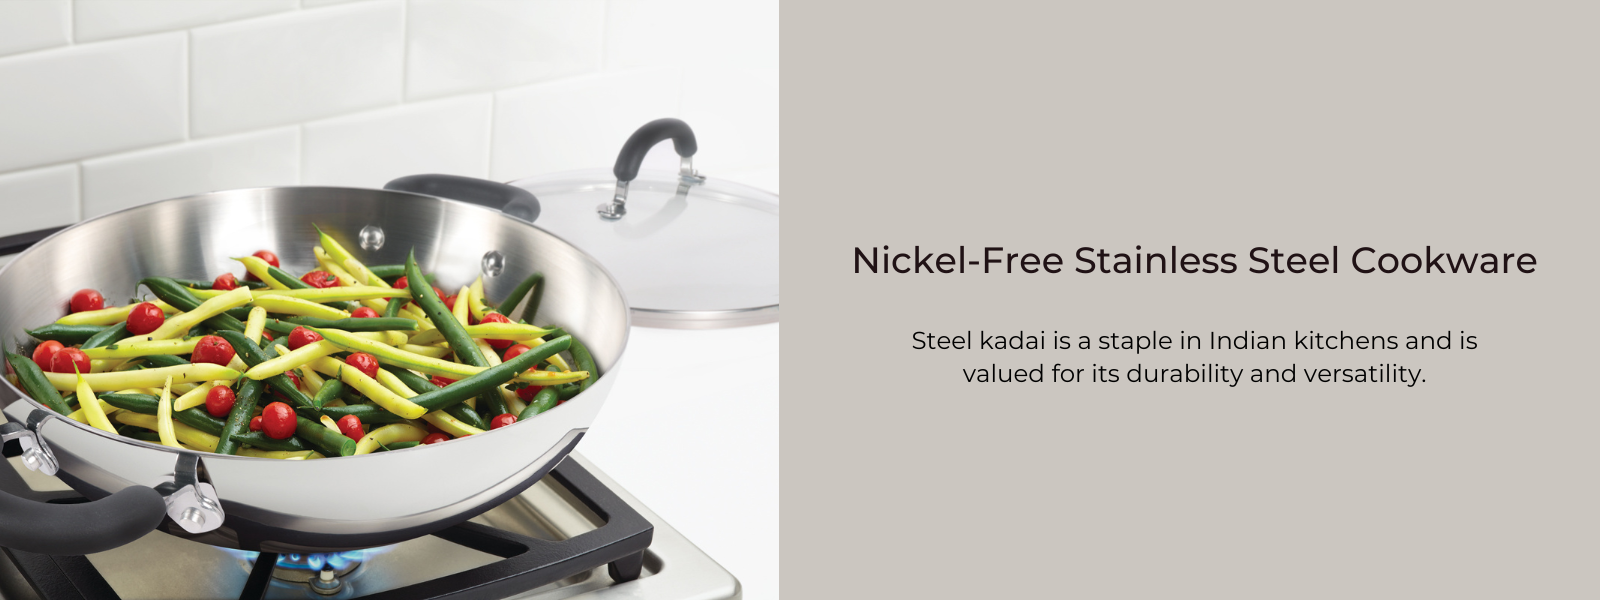 Steel Kadai: Buy Premium Nickel-Free Stainless Steel Cookware